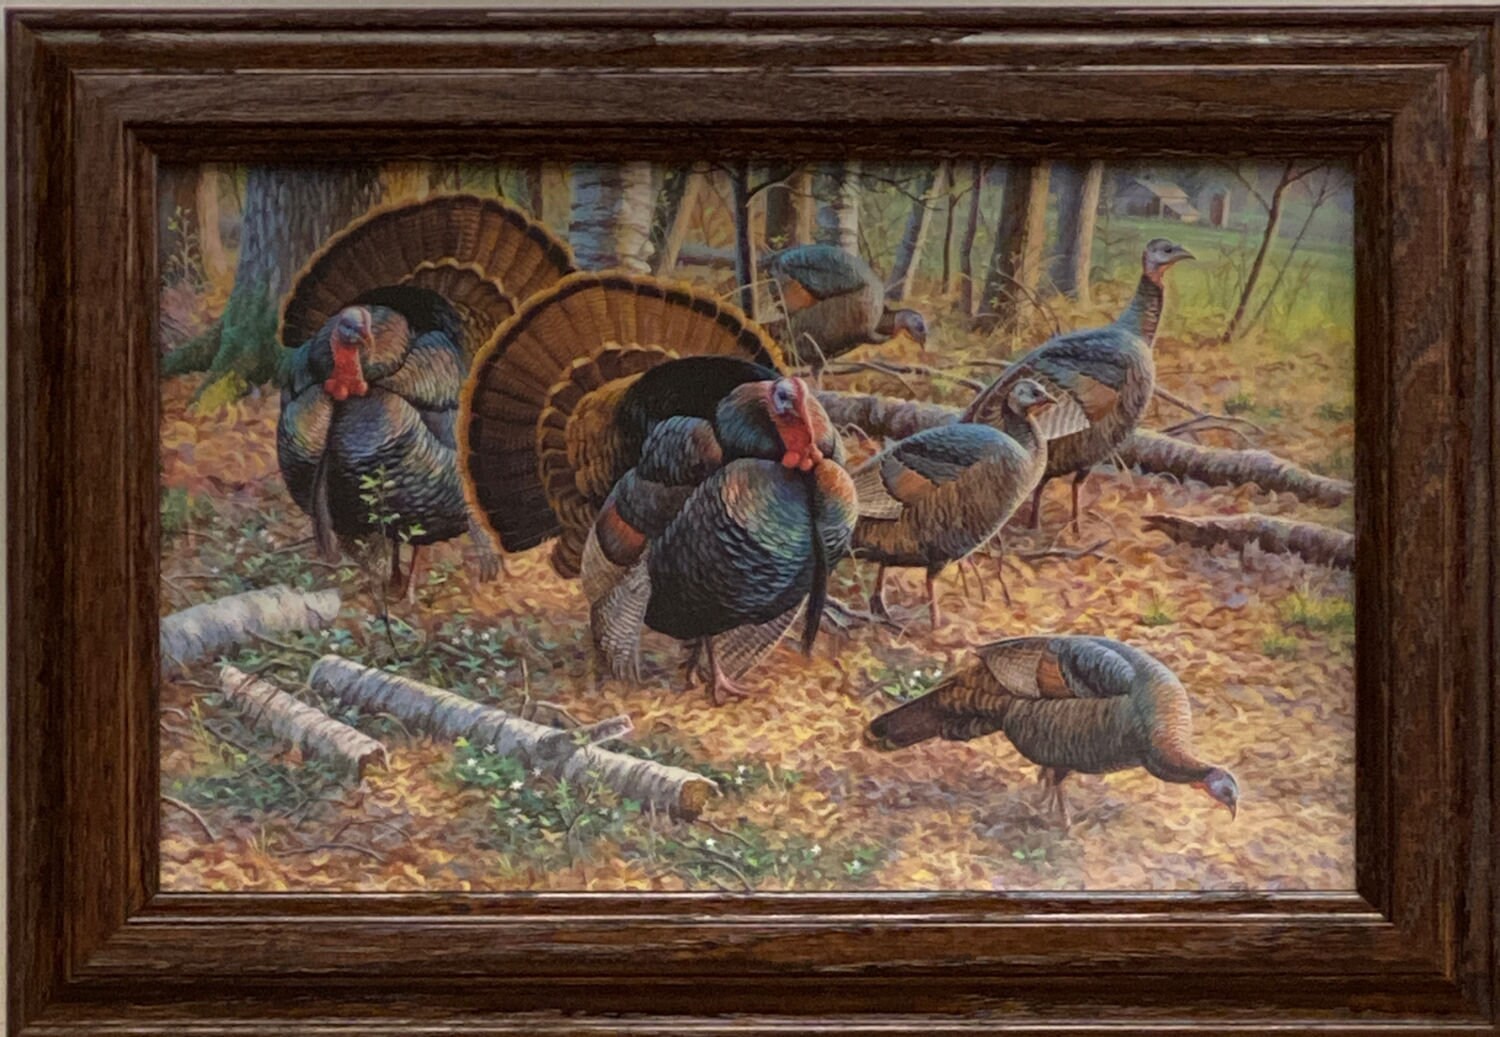 Wild Turkey Feathers Art Print 